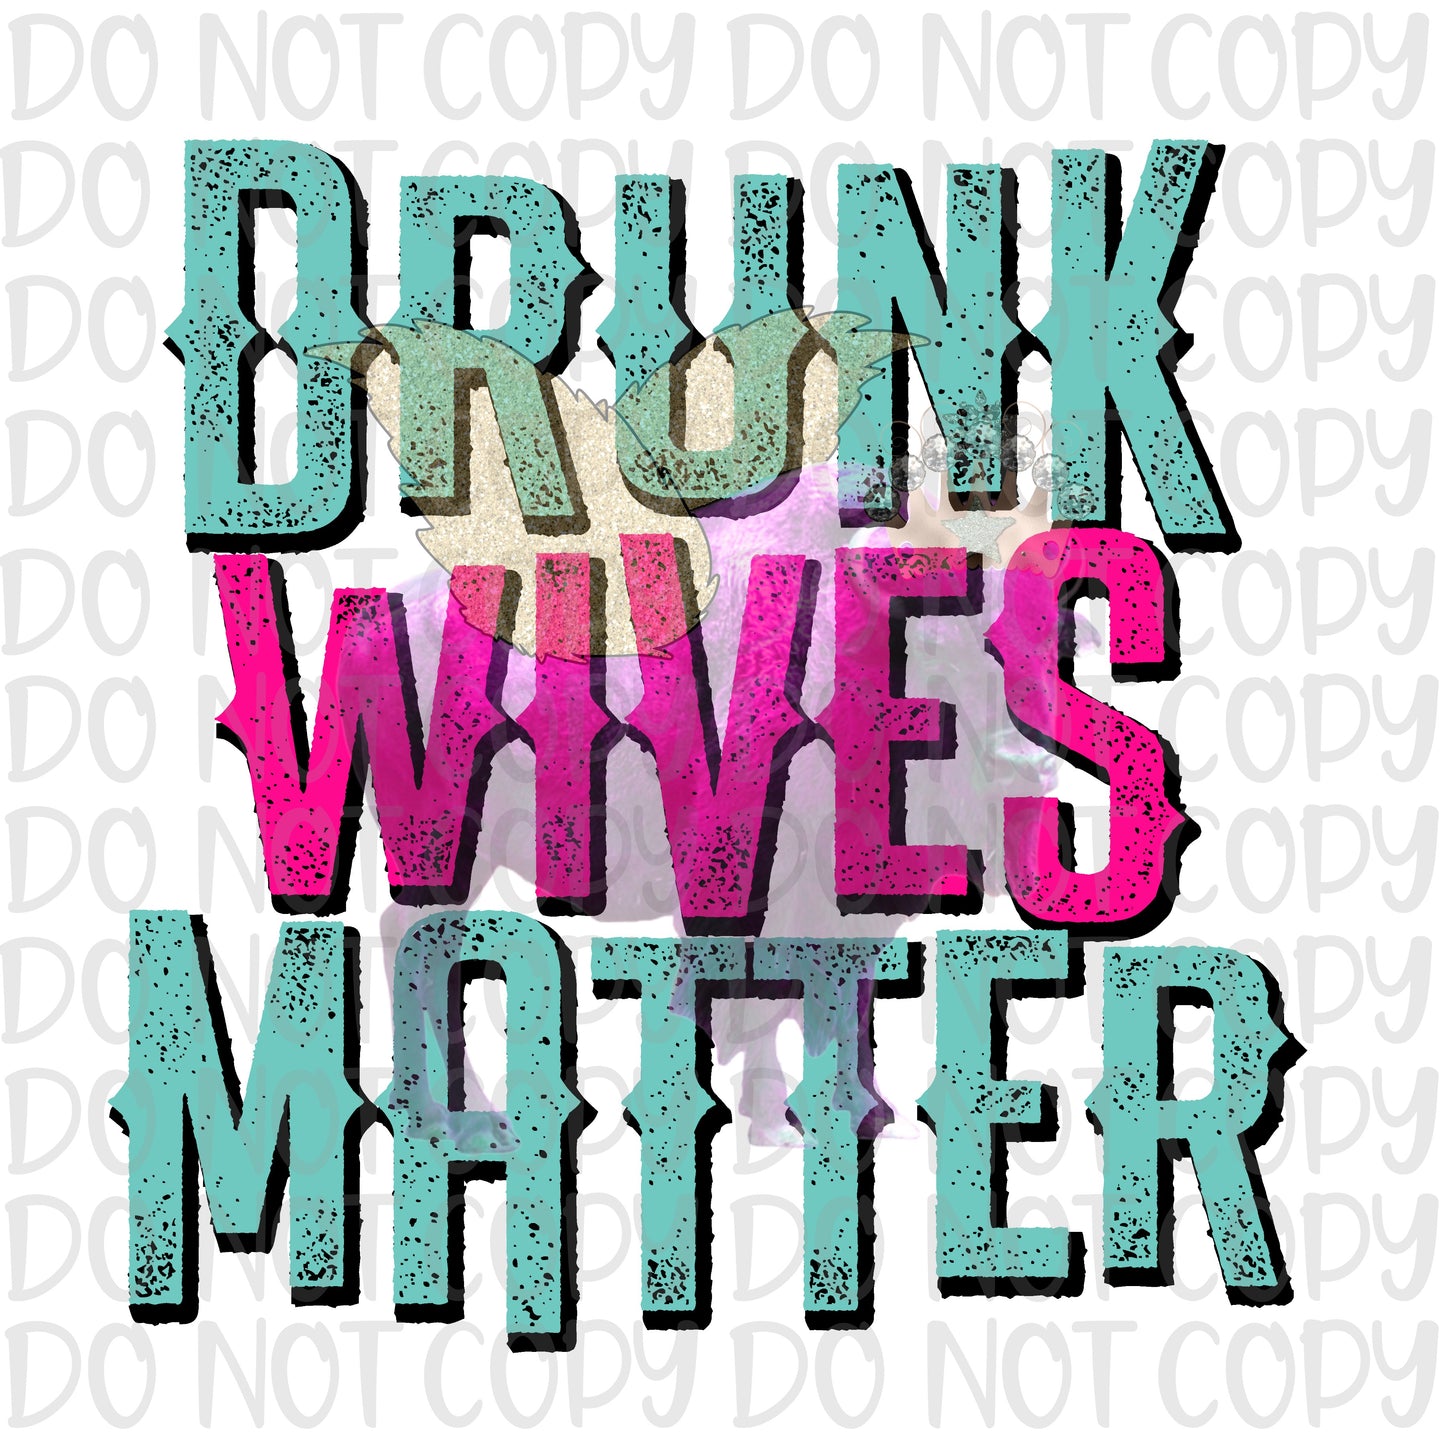 Drunk wives matter